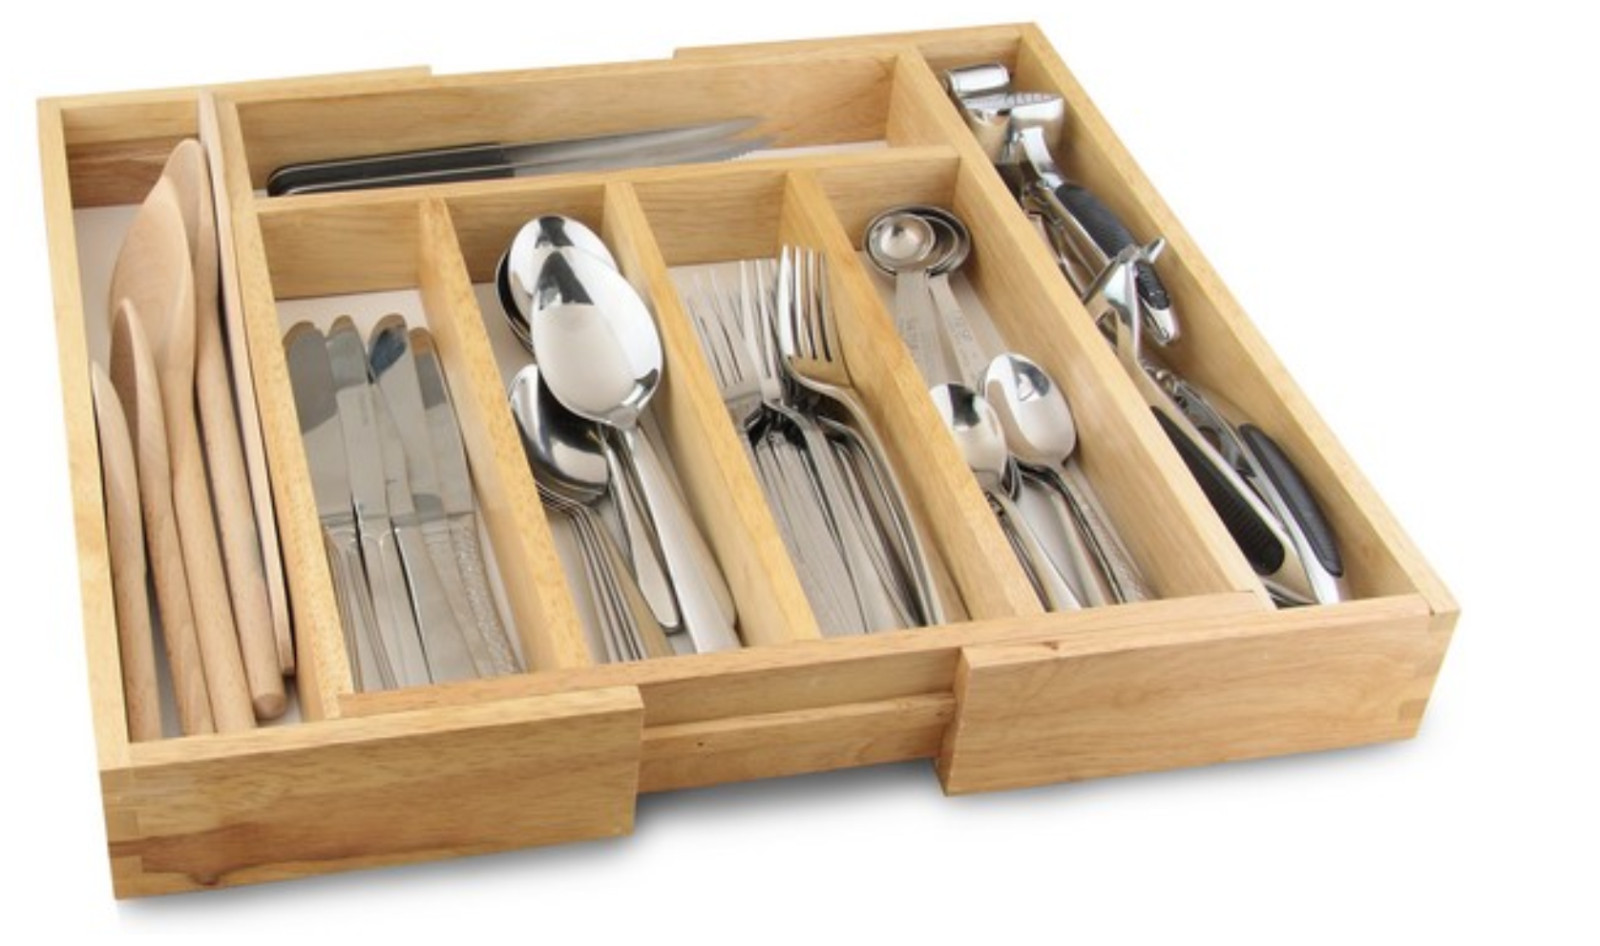 Best ideas about Kitchen Utensil Organizer
. Save or Pin Cutlery Drawer Utensil Holder Organizer Tray Wooden Now.